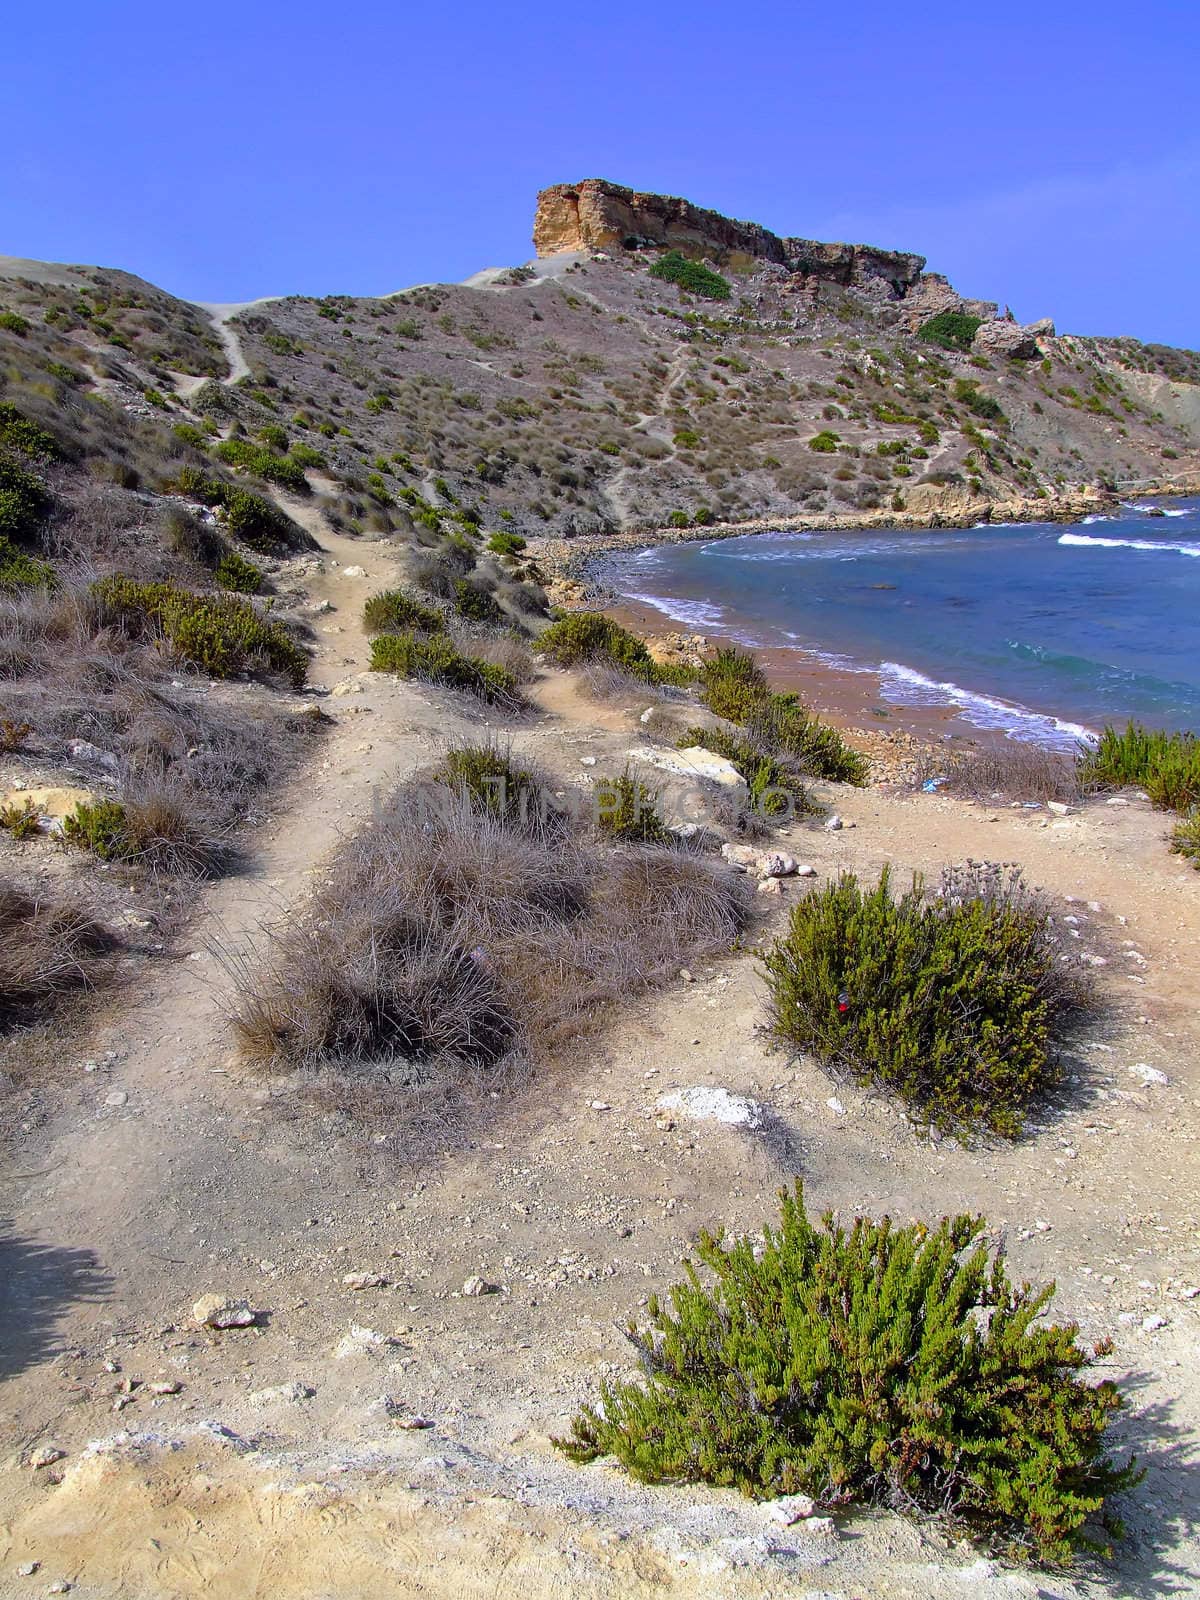 Rocky shoreline on the island of Malta - pathway along arid trek